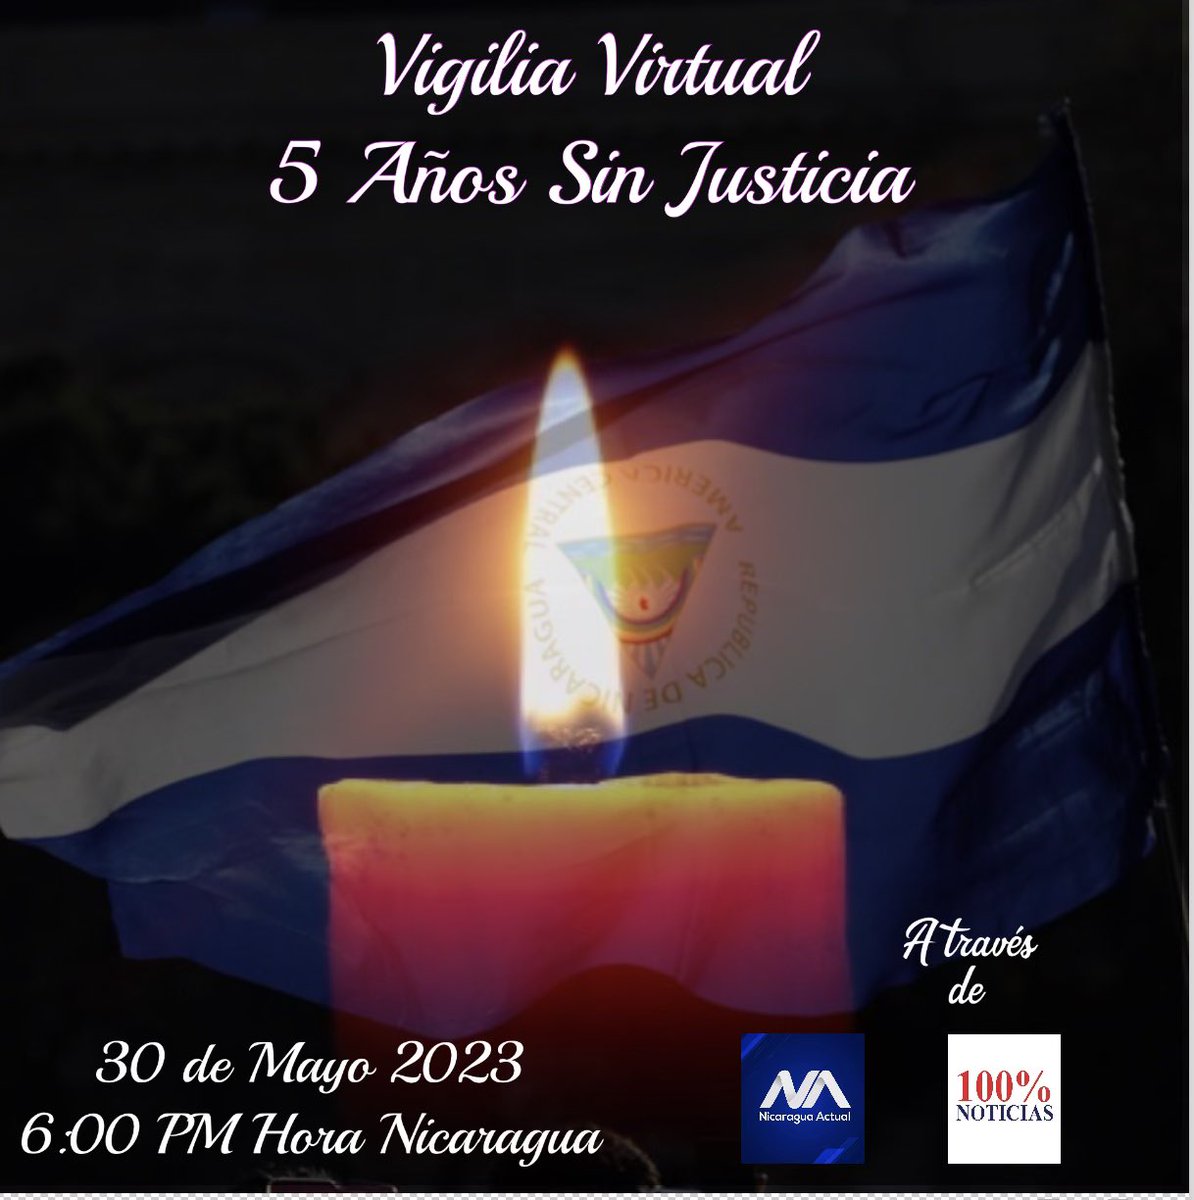 5 años han pasado y el dolor persiste. Te invitamos a nuestra vigilia virtual este 30 de Mayo 6:00 PM hora nica, a través de @100noticiasni @NicaraguaActual y otras paginas en Facebook y juntos conmemoremos esta fecha y exijamos justicia. #5AñosSinJusticia #AbrazaLaJusticia